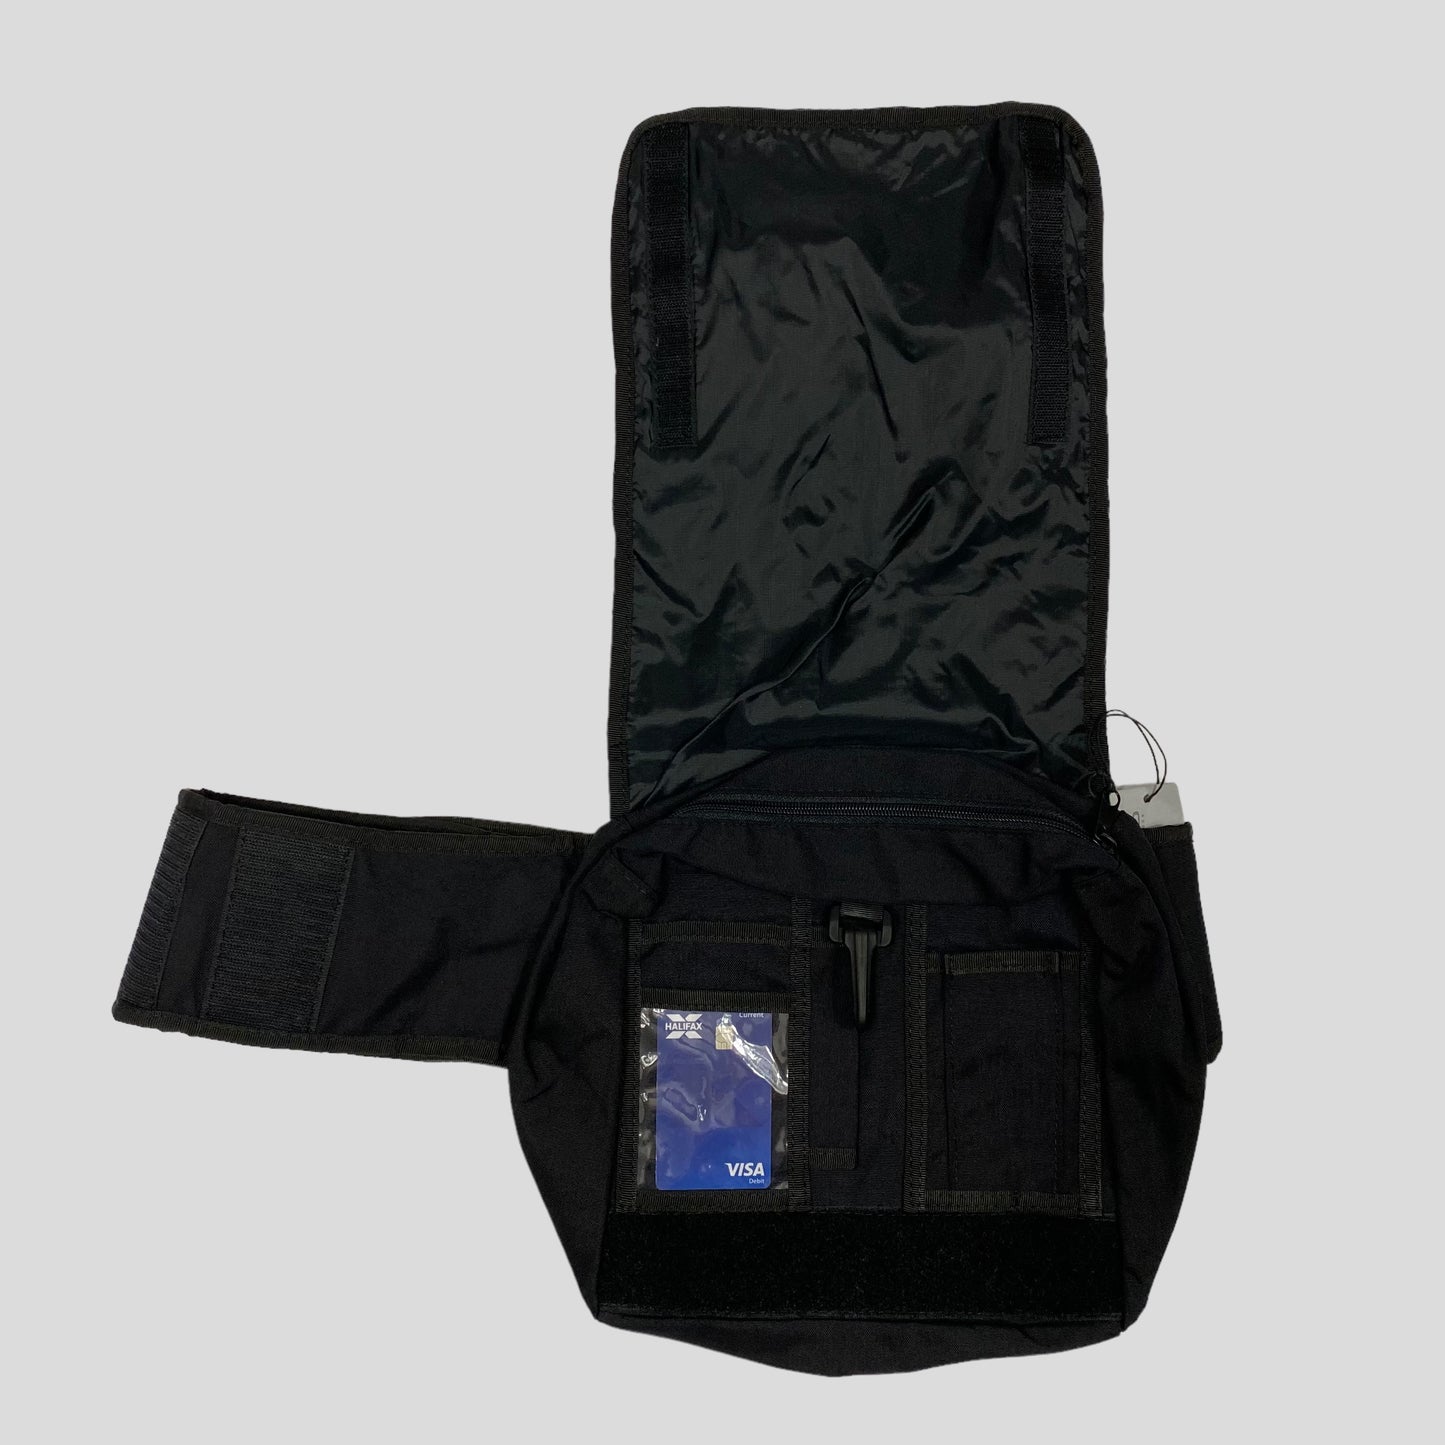 IS Island 00’s Tactical Waistbag - Black